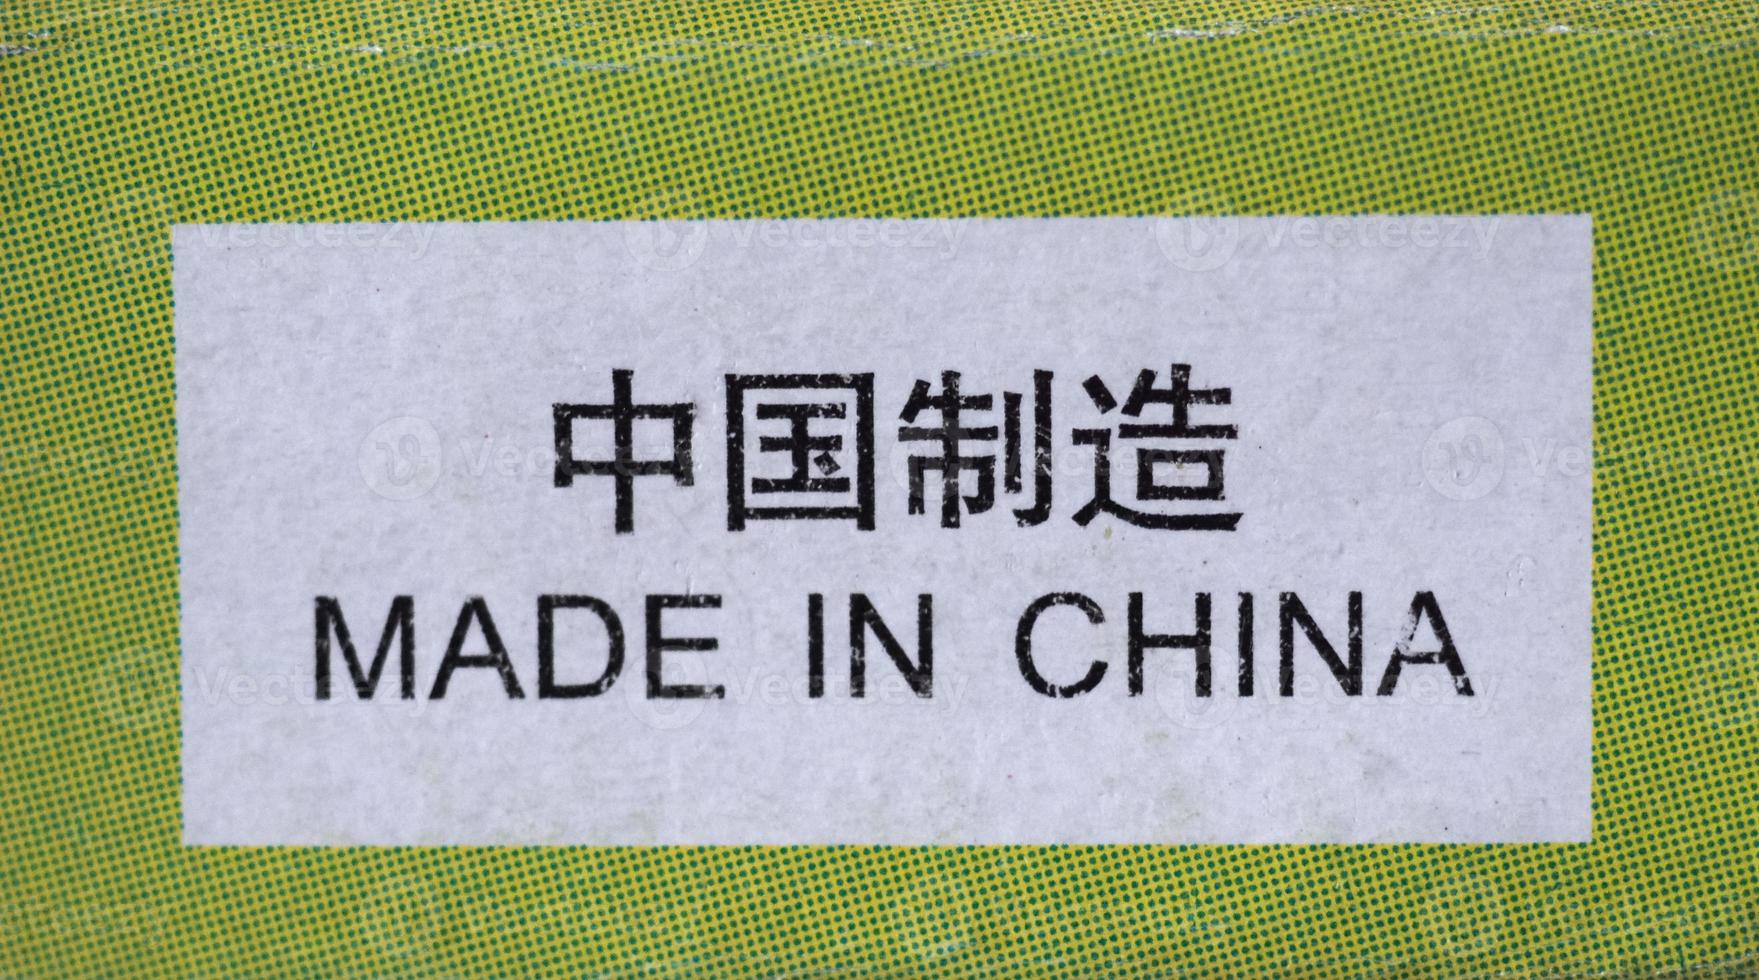 etichetta made in china foto